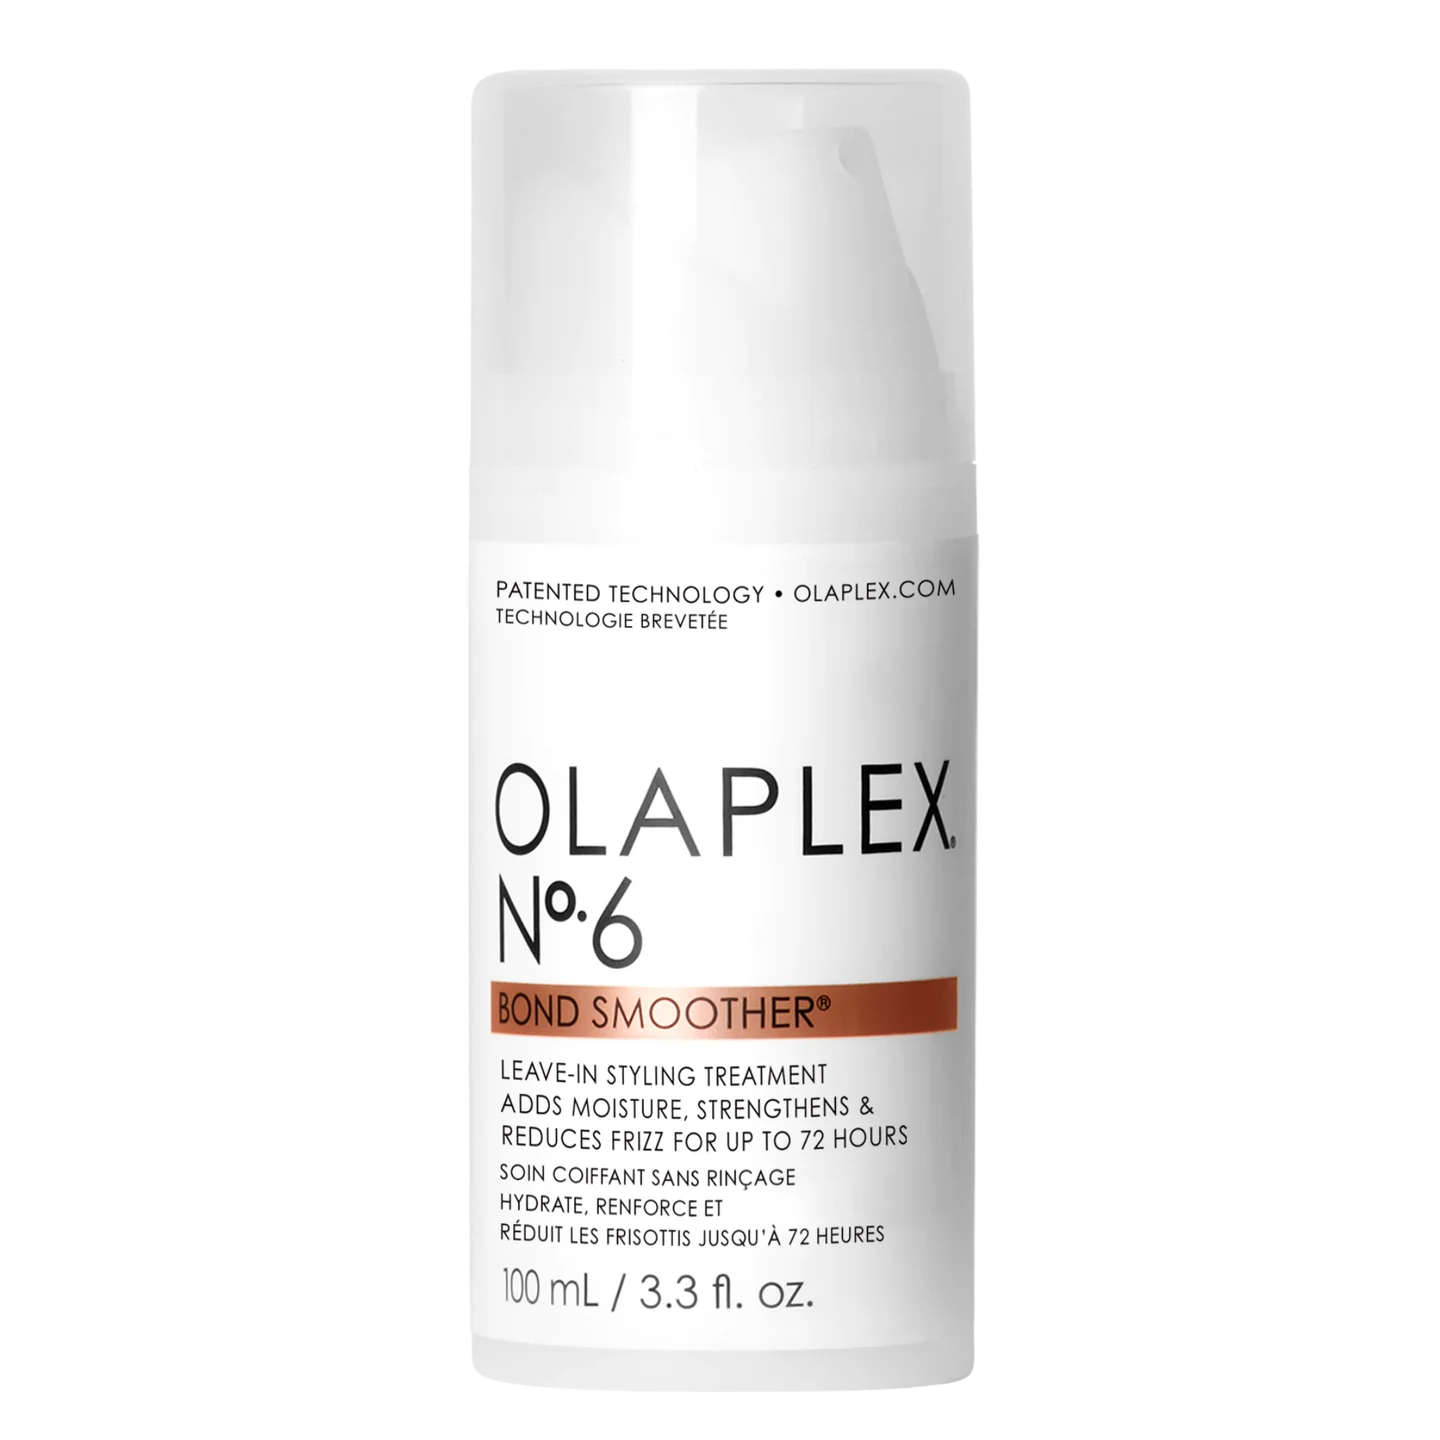 OLAPLEX No.6